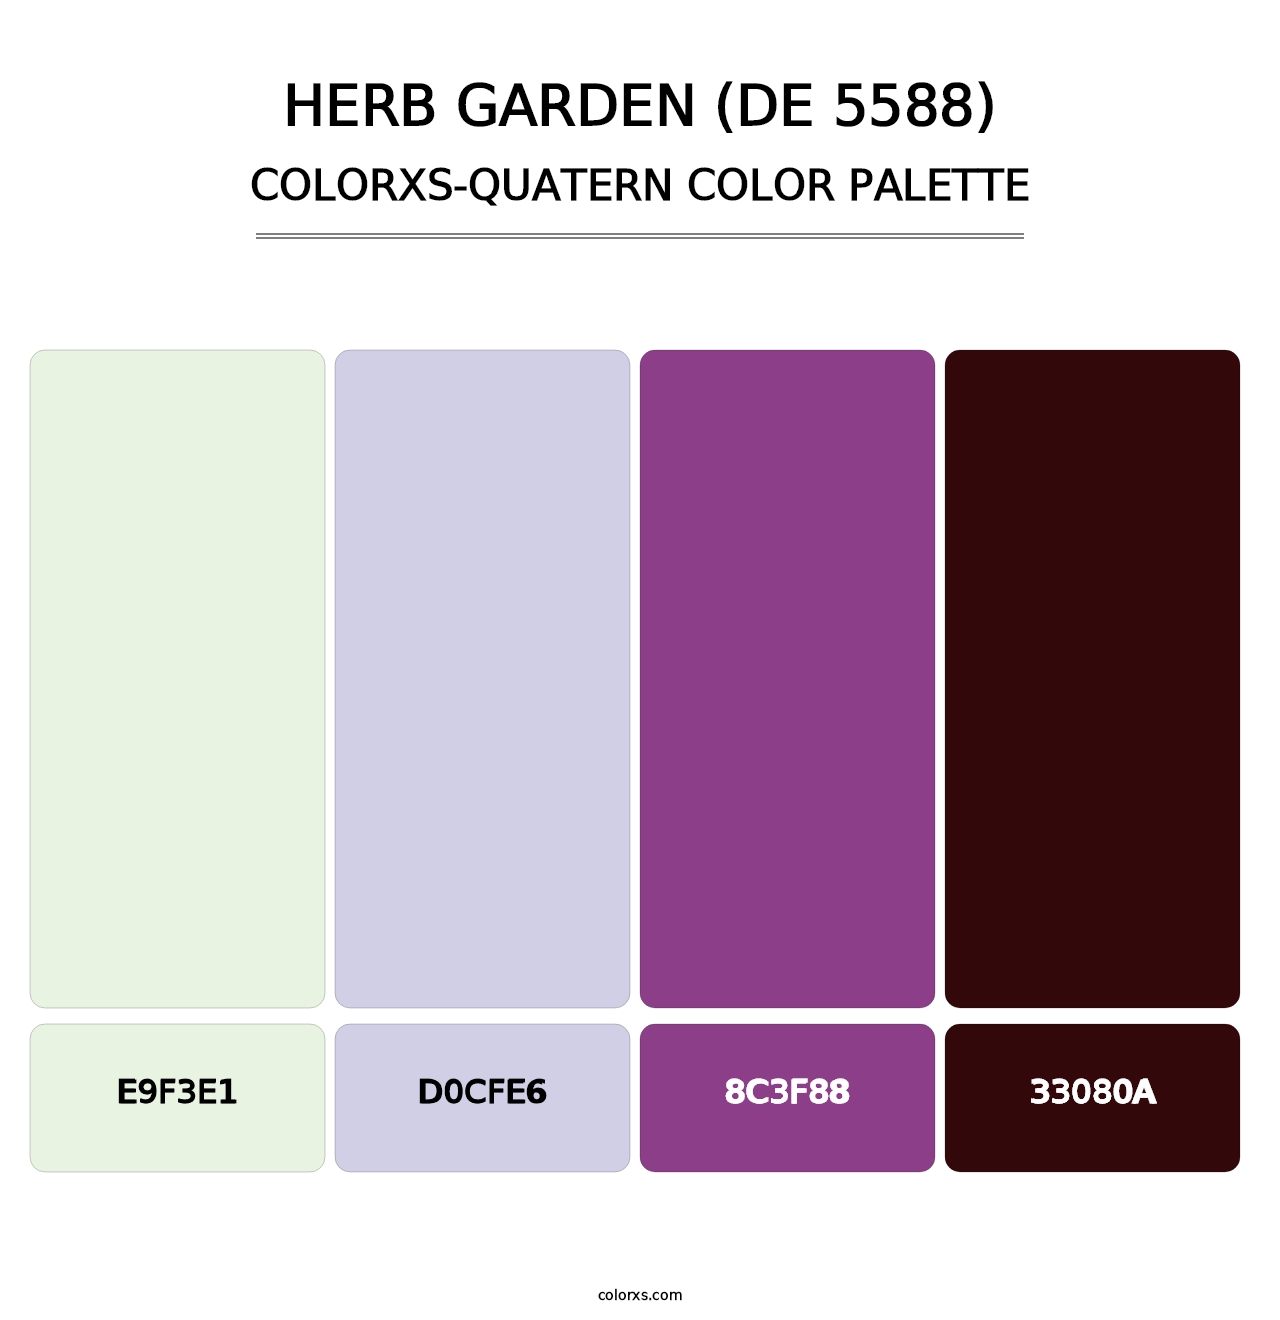 Herb Garden (DE 5588) - Colorxs Quatern Palette